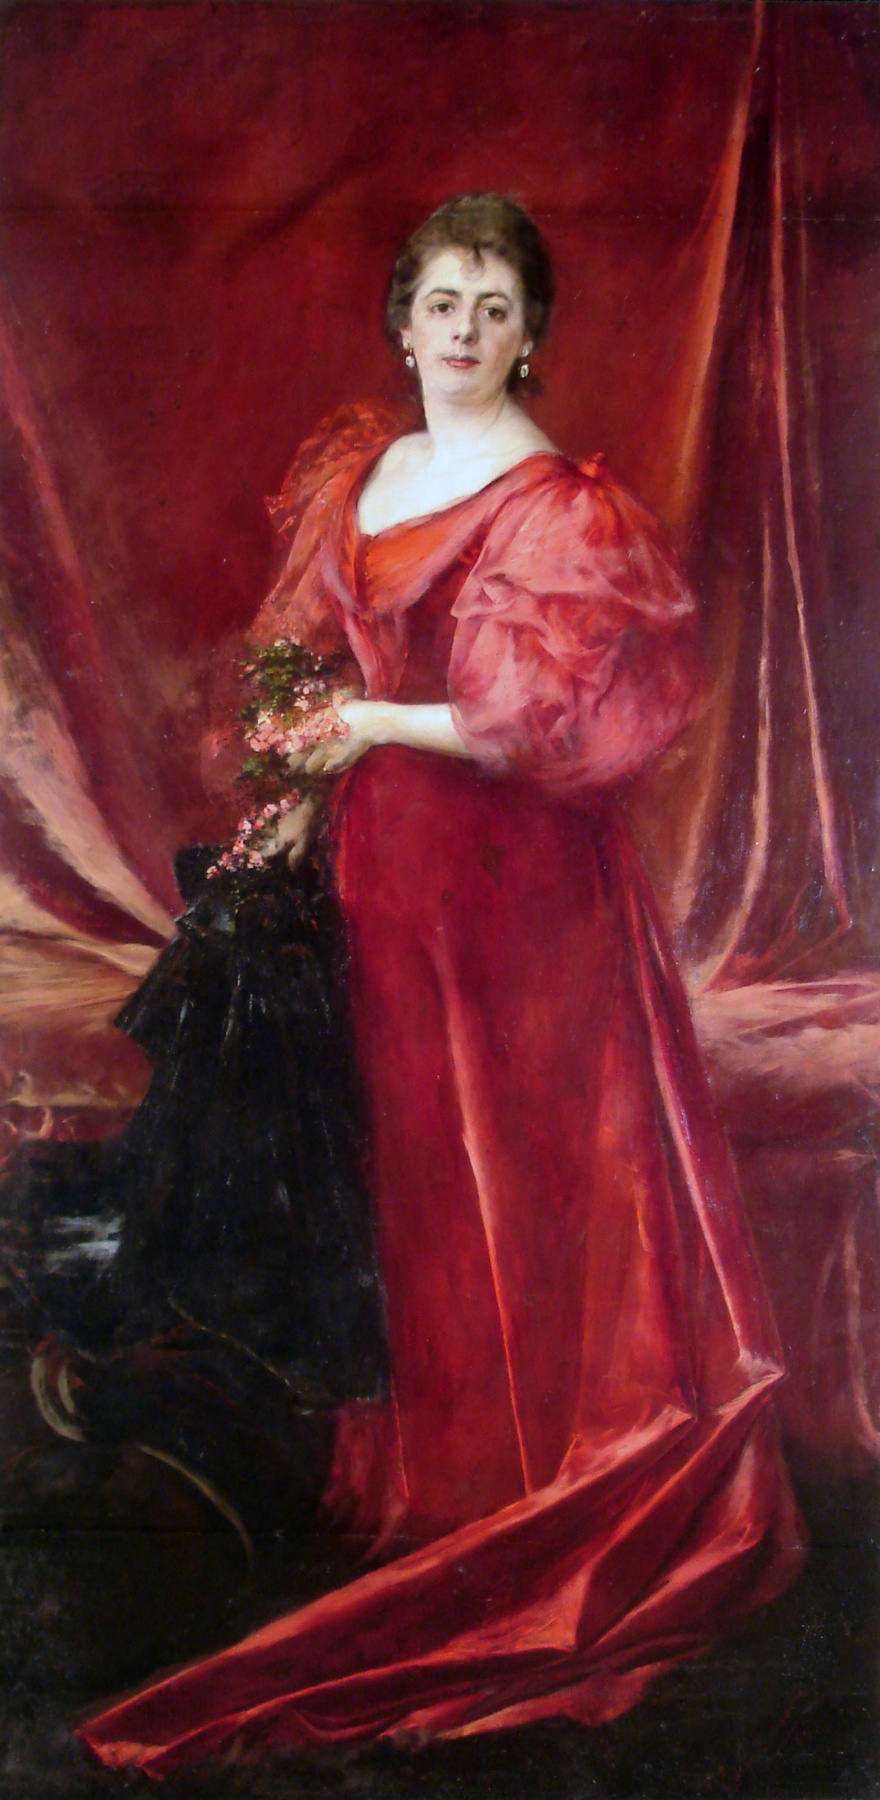 Эрнесто из La Cárcova. Портрет миссис Мария де ла Каркова де Феррари